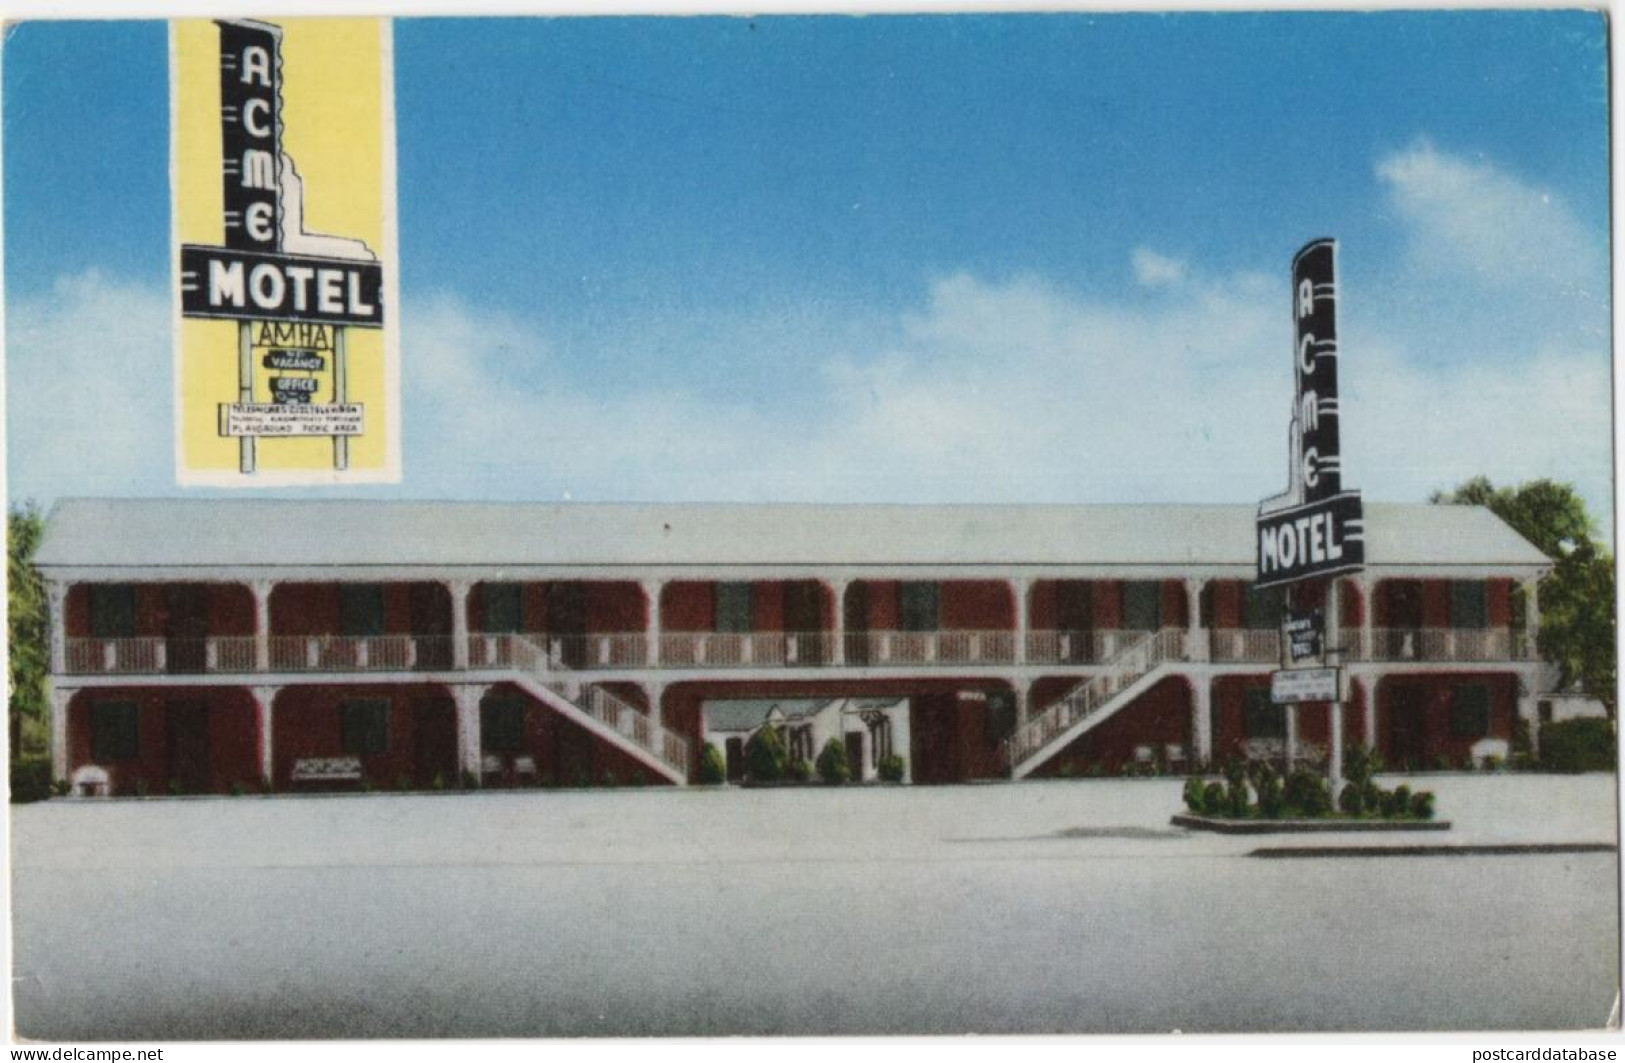 Acme Motel - Little Rock, Arkansas - & Hotel - Little Rock